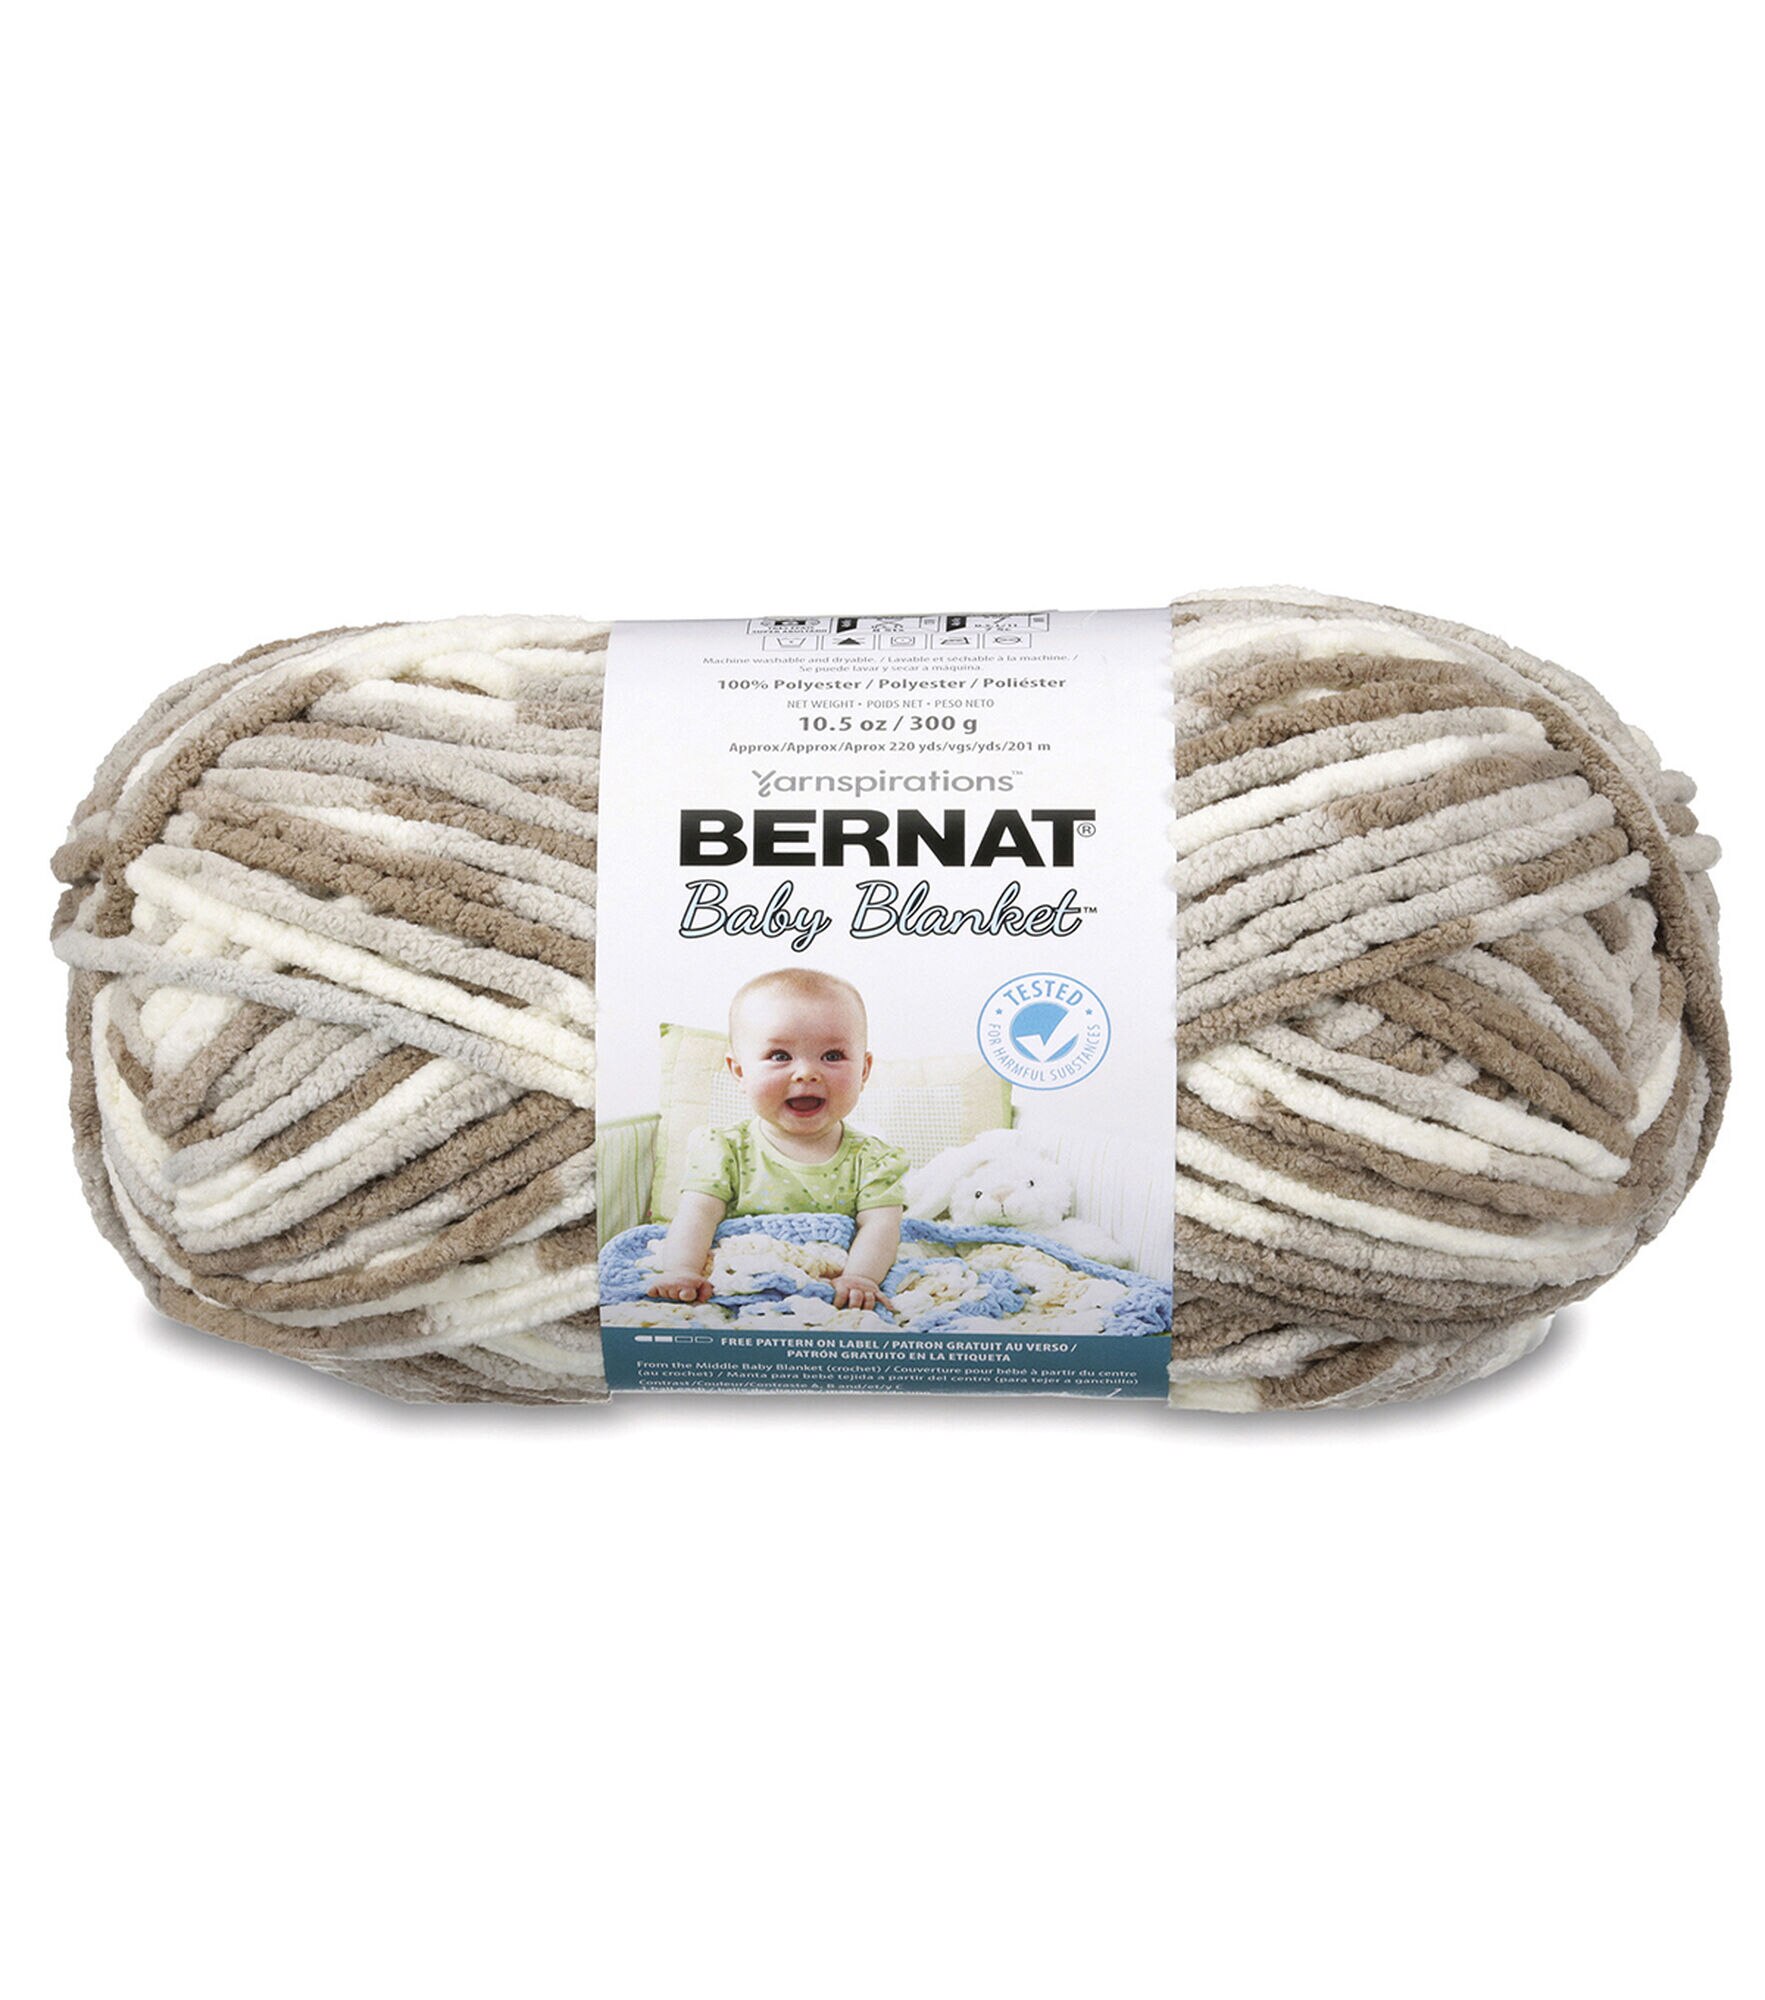 Bernat Baby Blanket 220yds Super Bulky Polyester Variegated Yarn, Little Sandcastles, hi-res